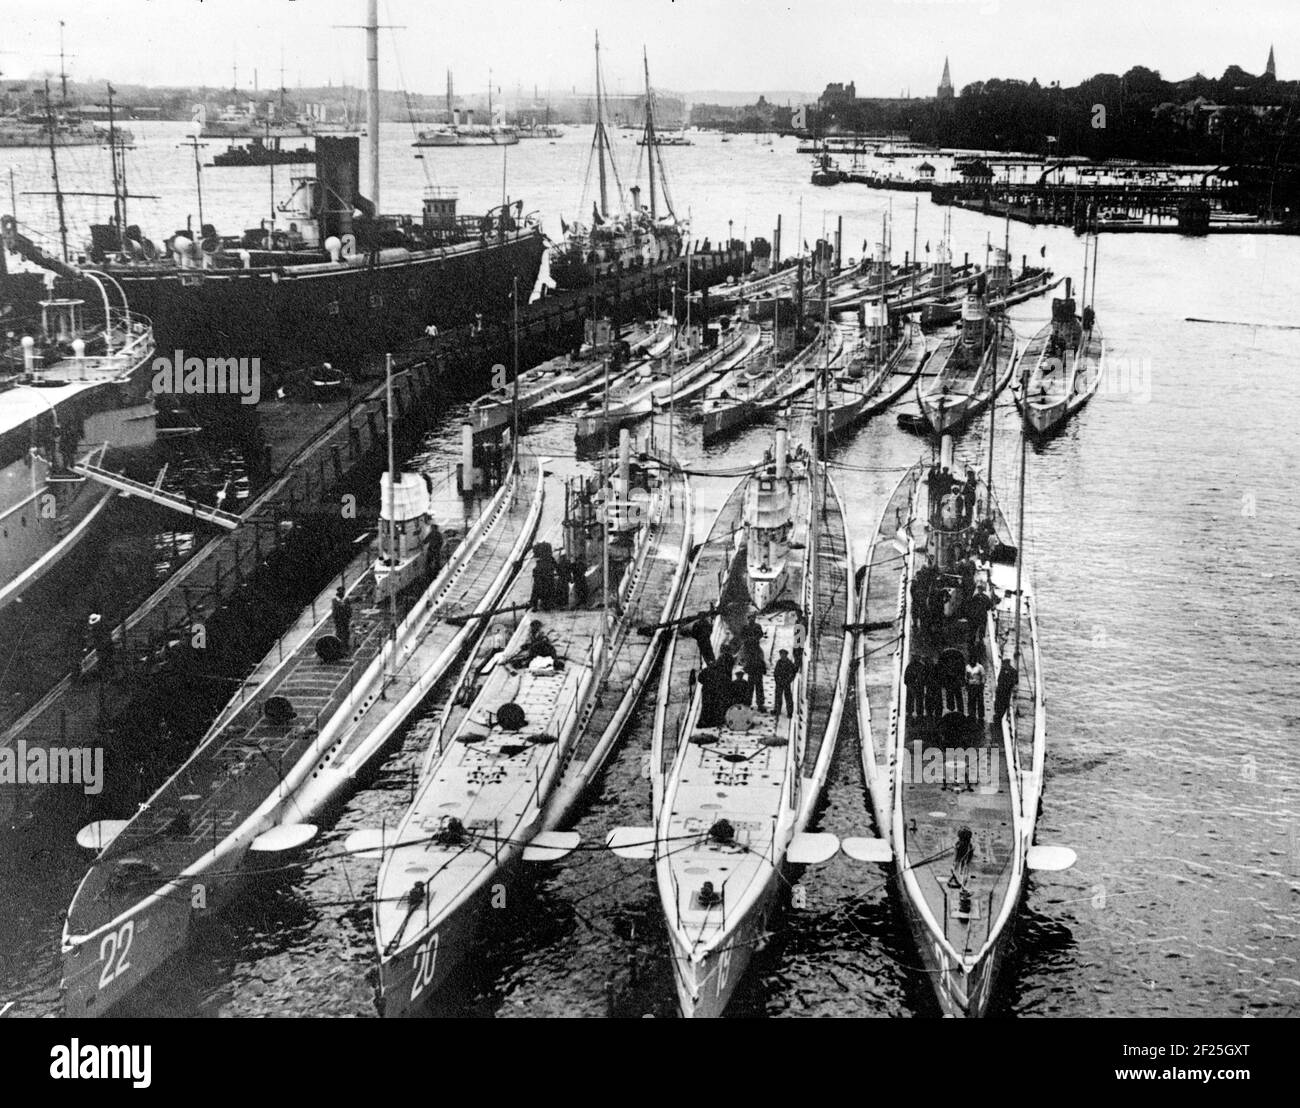 WWI U-Boats alemán en el puerto. U-20, primer plano - segundo desde la izquierda, hundió la Lusitania RMS. Foto c. 1915 Foto de stock